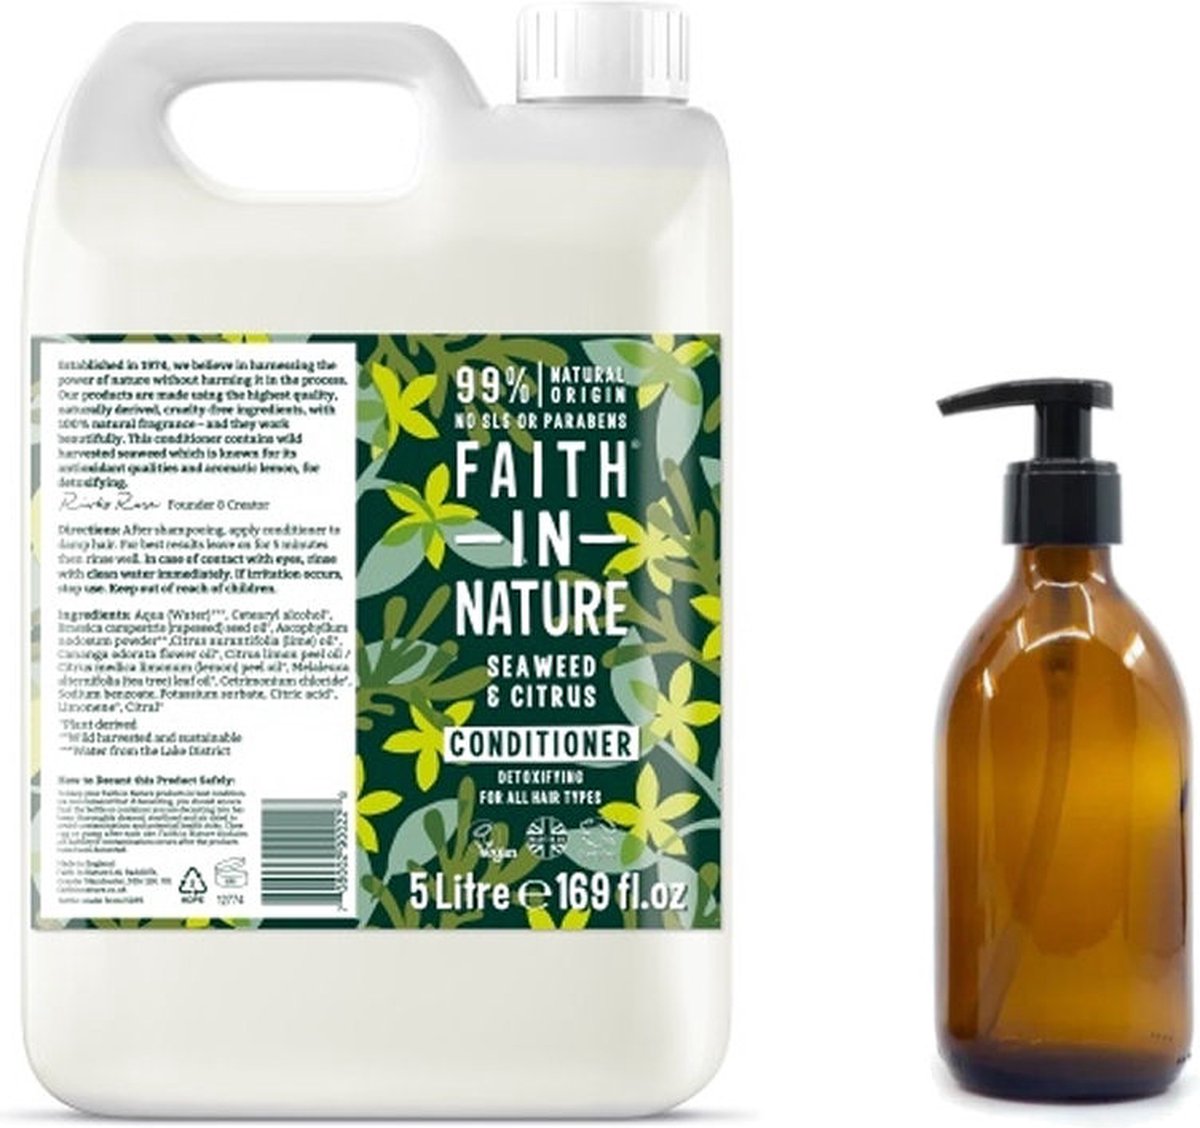 FAITH IN NATURE - Conditioner Seaweed & Citrus Refill 5 Liter - nu met GRATIS glaze refill fles 500ml